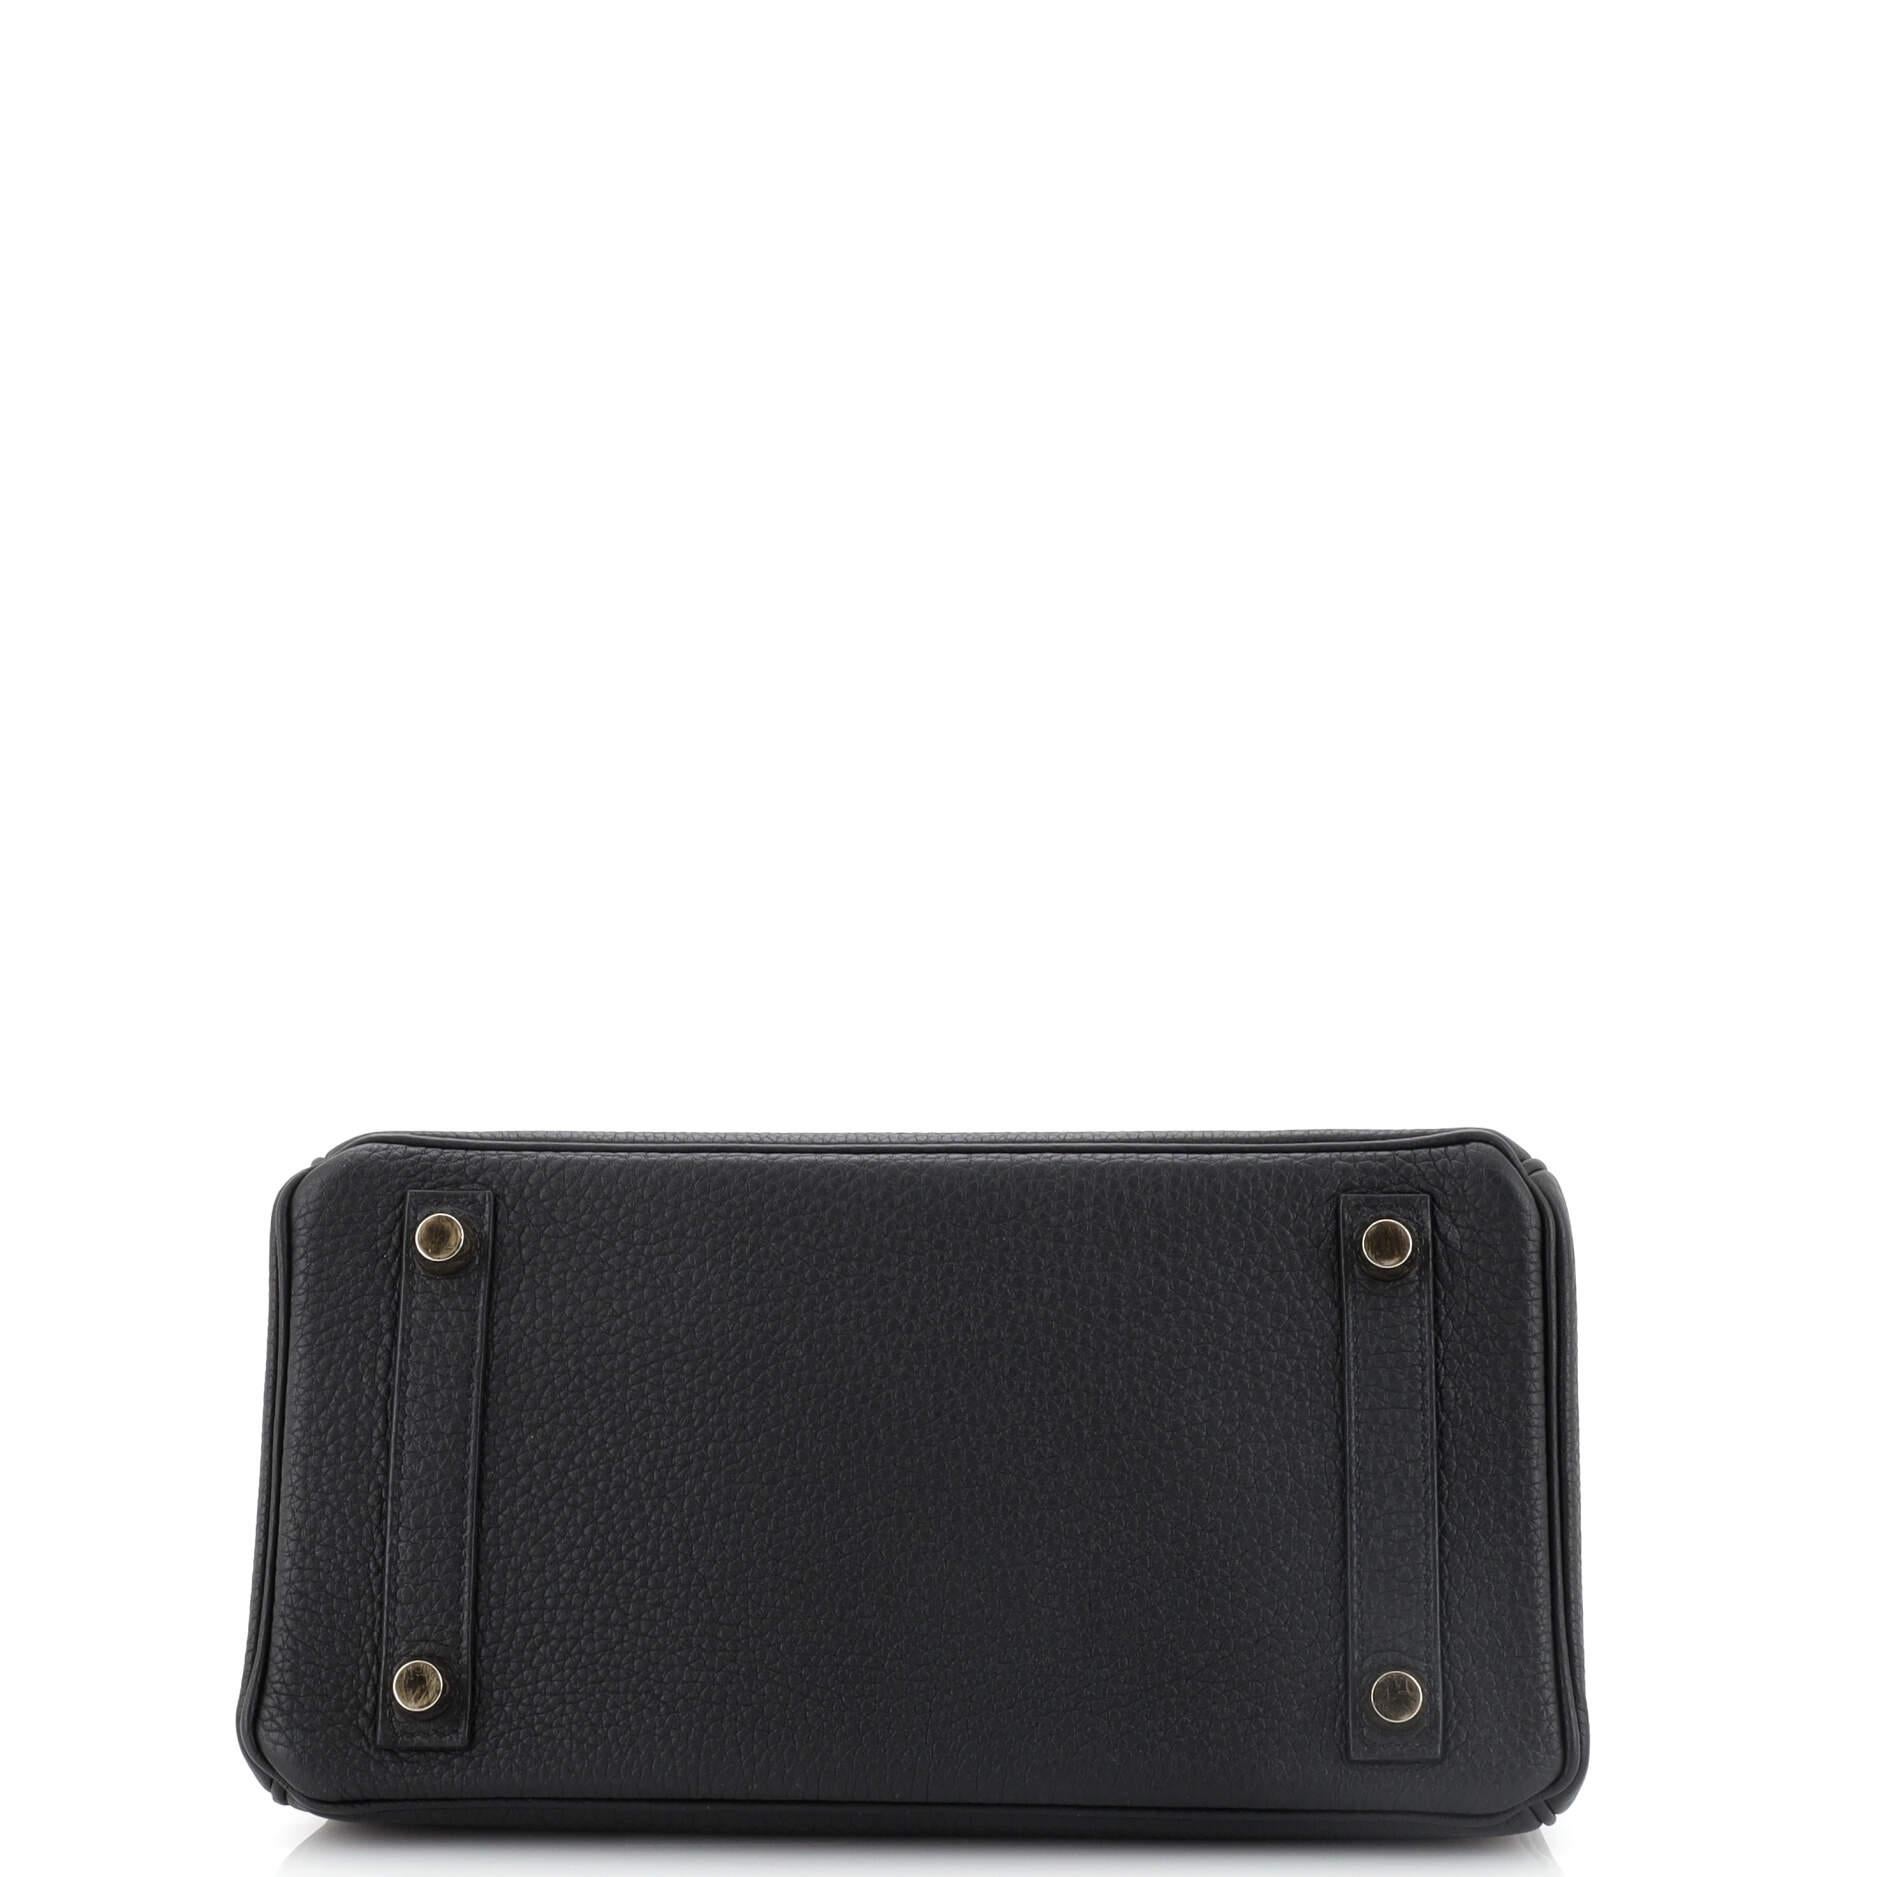 Hermes Birkin Handbag Black Togo with Gold Hardware 25 1